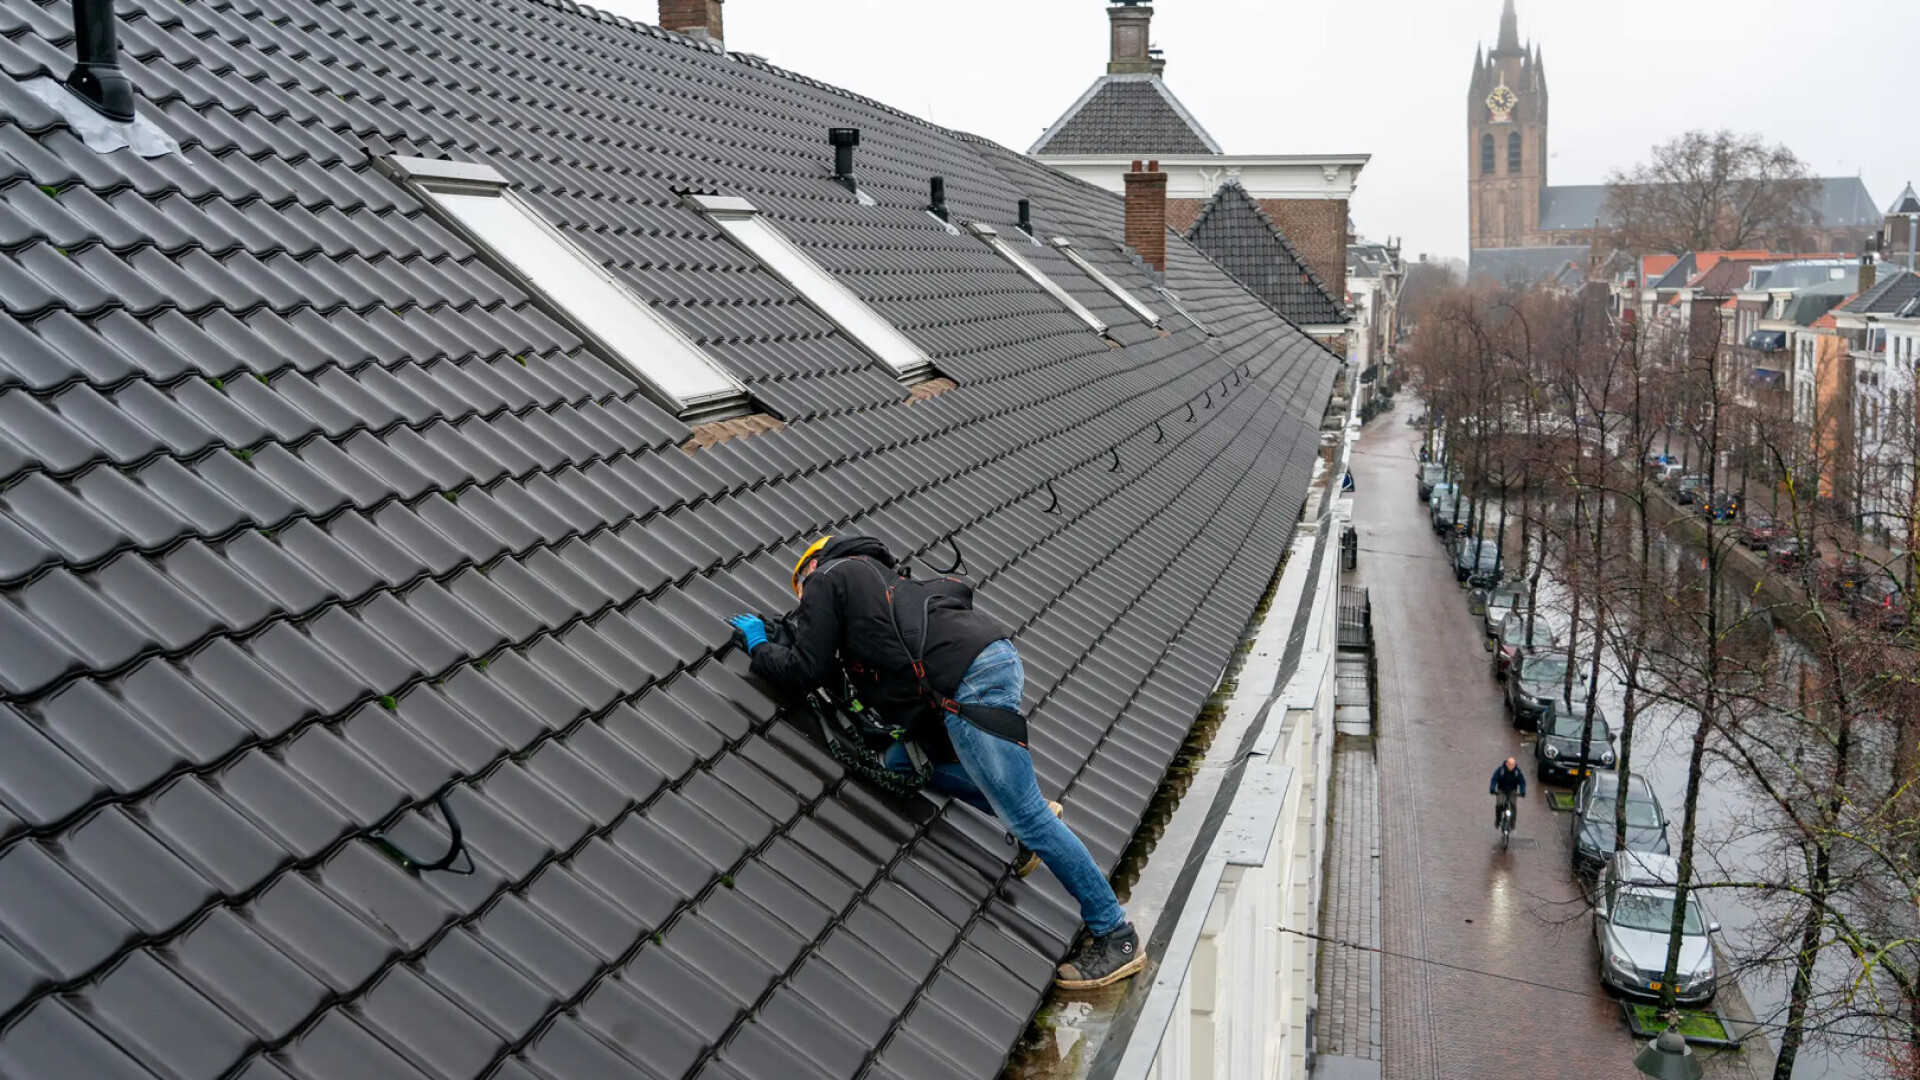 Toonaangevend in opleiden van veilig dak specialisten